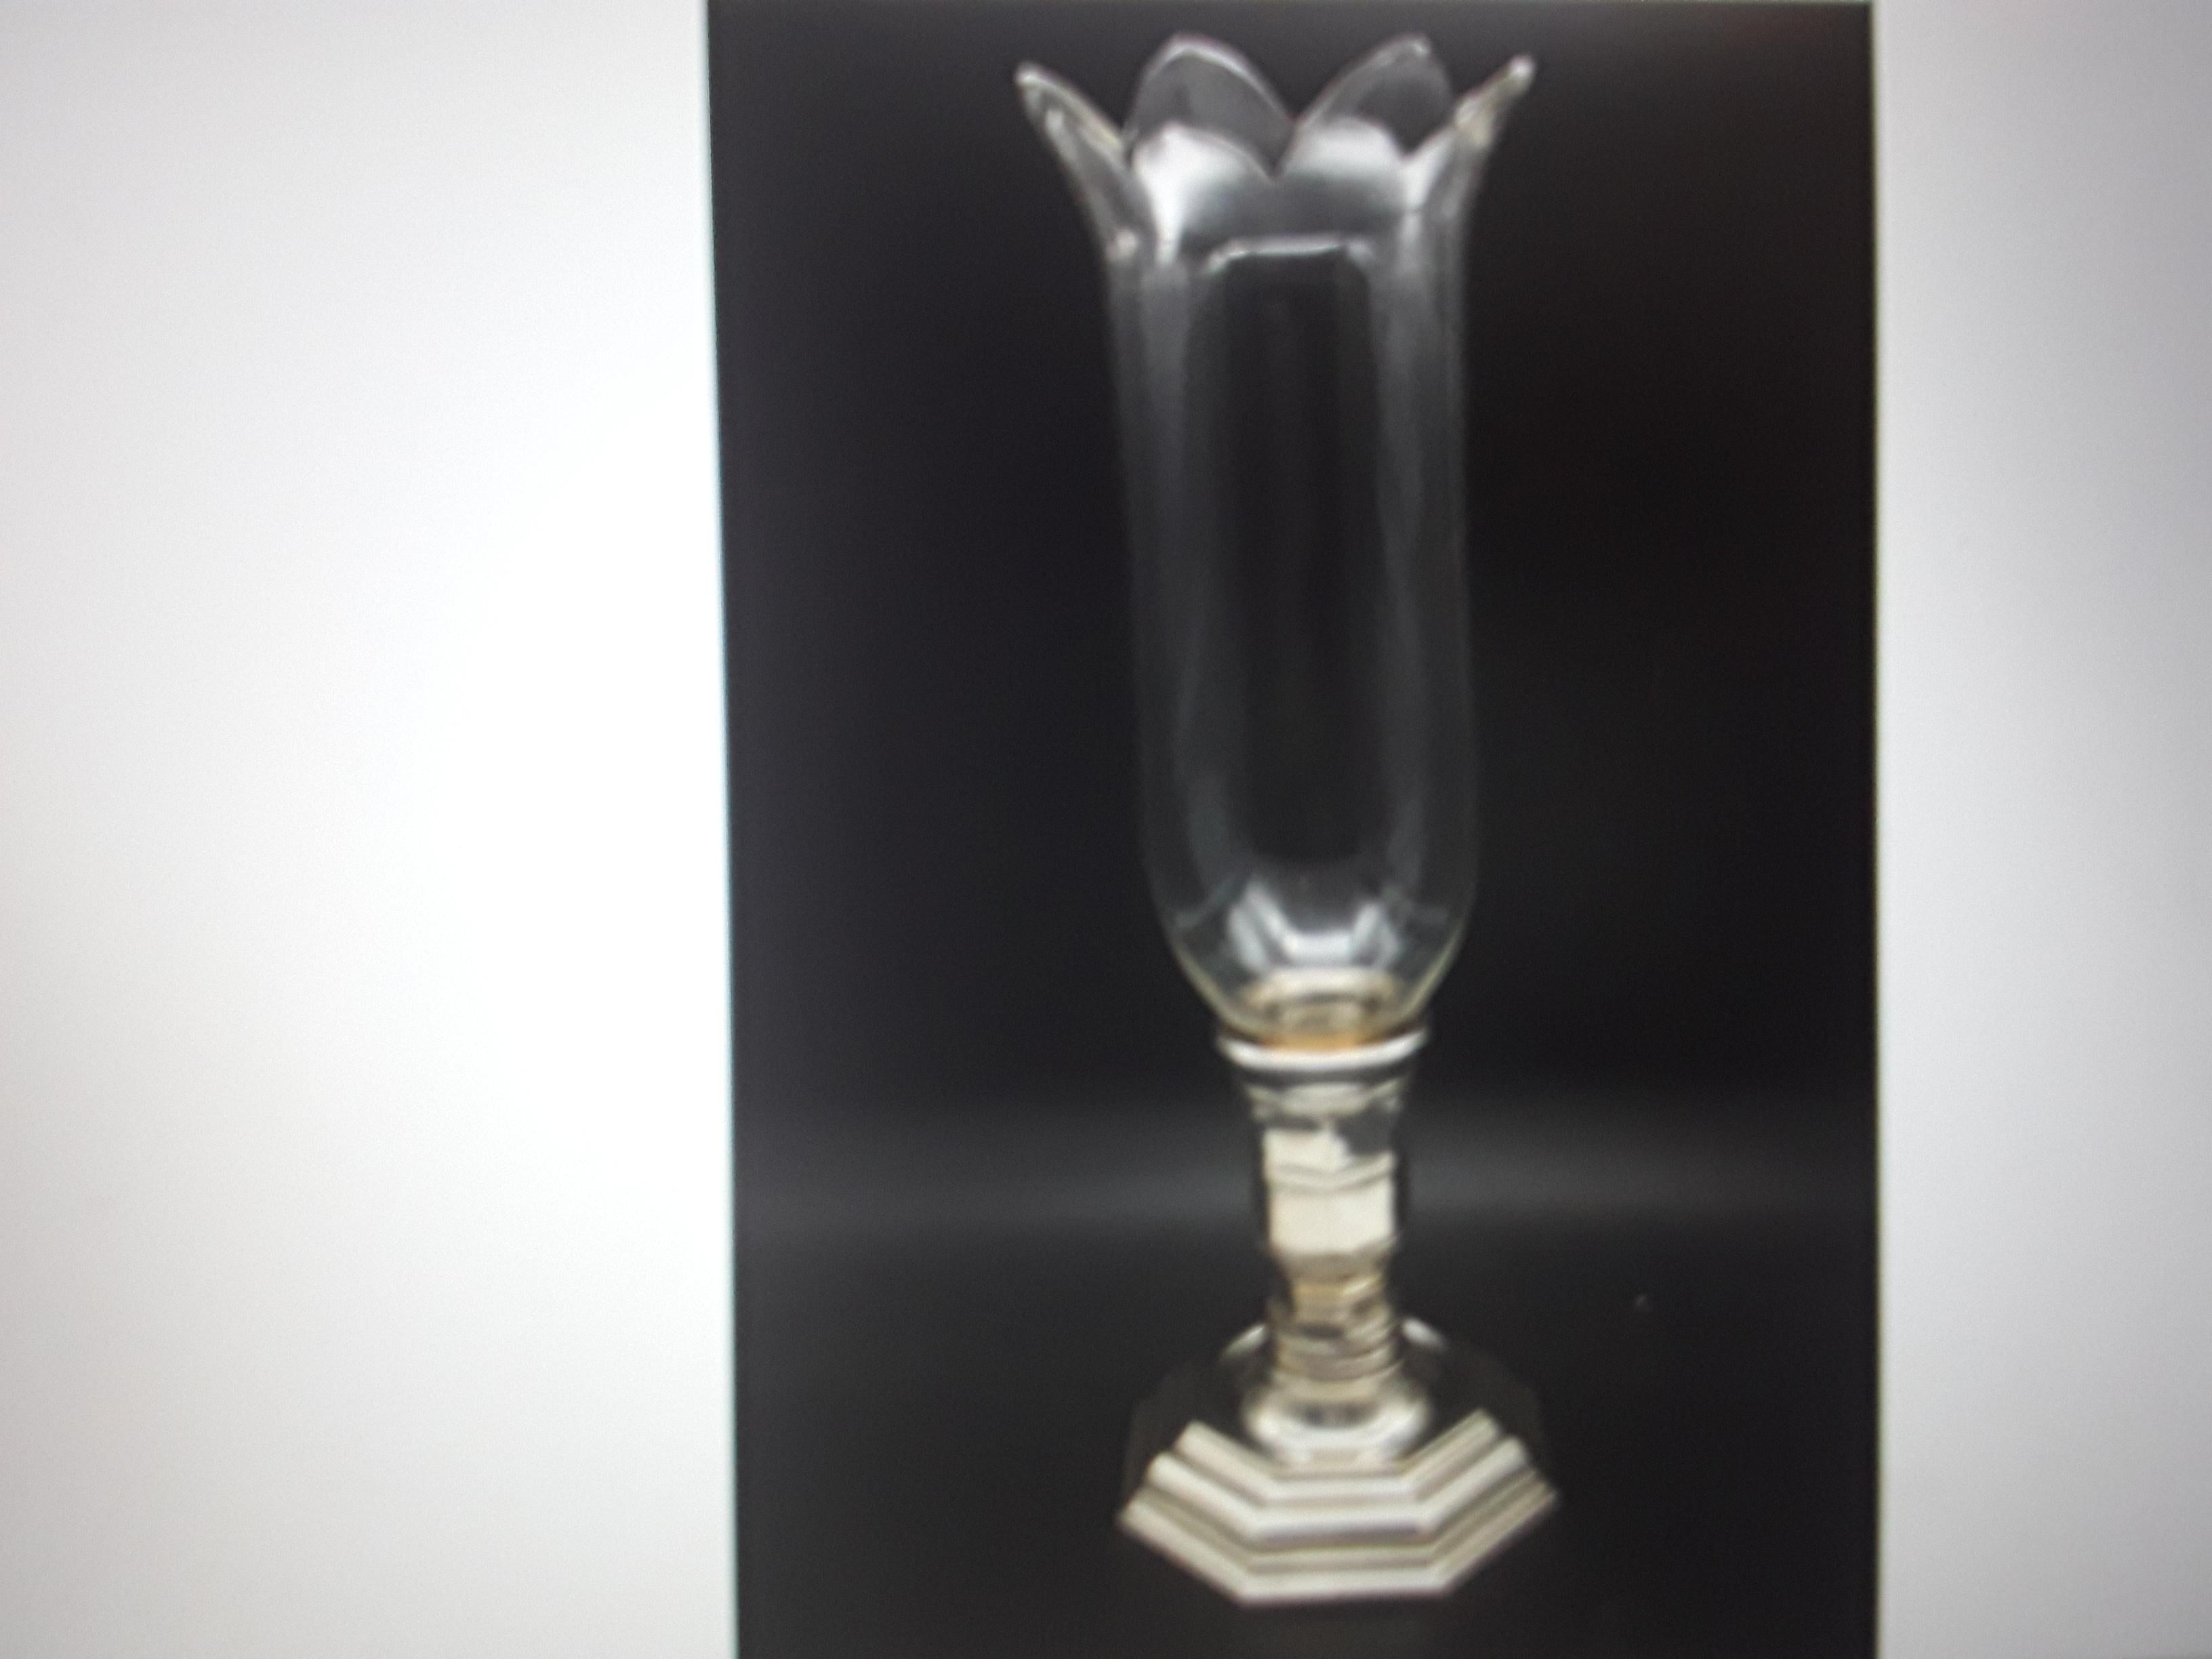 Original-Kerzenlampe aus den 1930er Jahren. Signierter Baccarat-Kristallschirm auf Silbersockel mit Christofle-Marke. Dies ist ein Originalset. Schöner Kerzenständer/ Kerzenlampe.